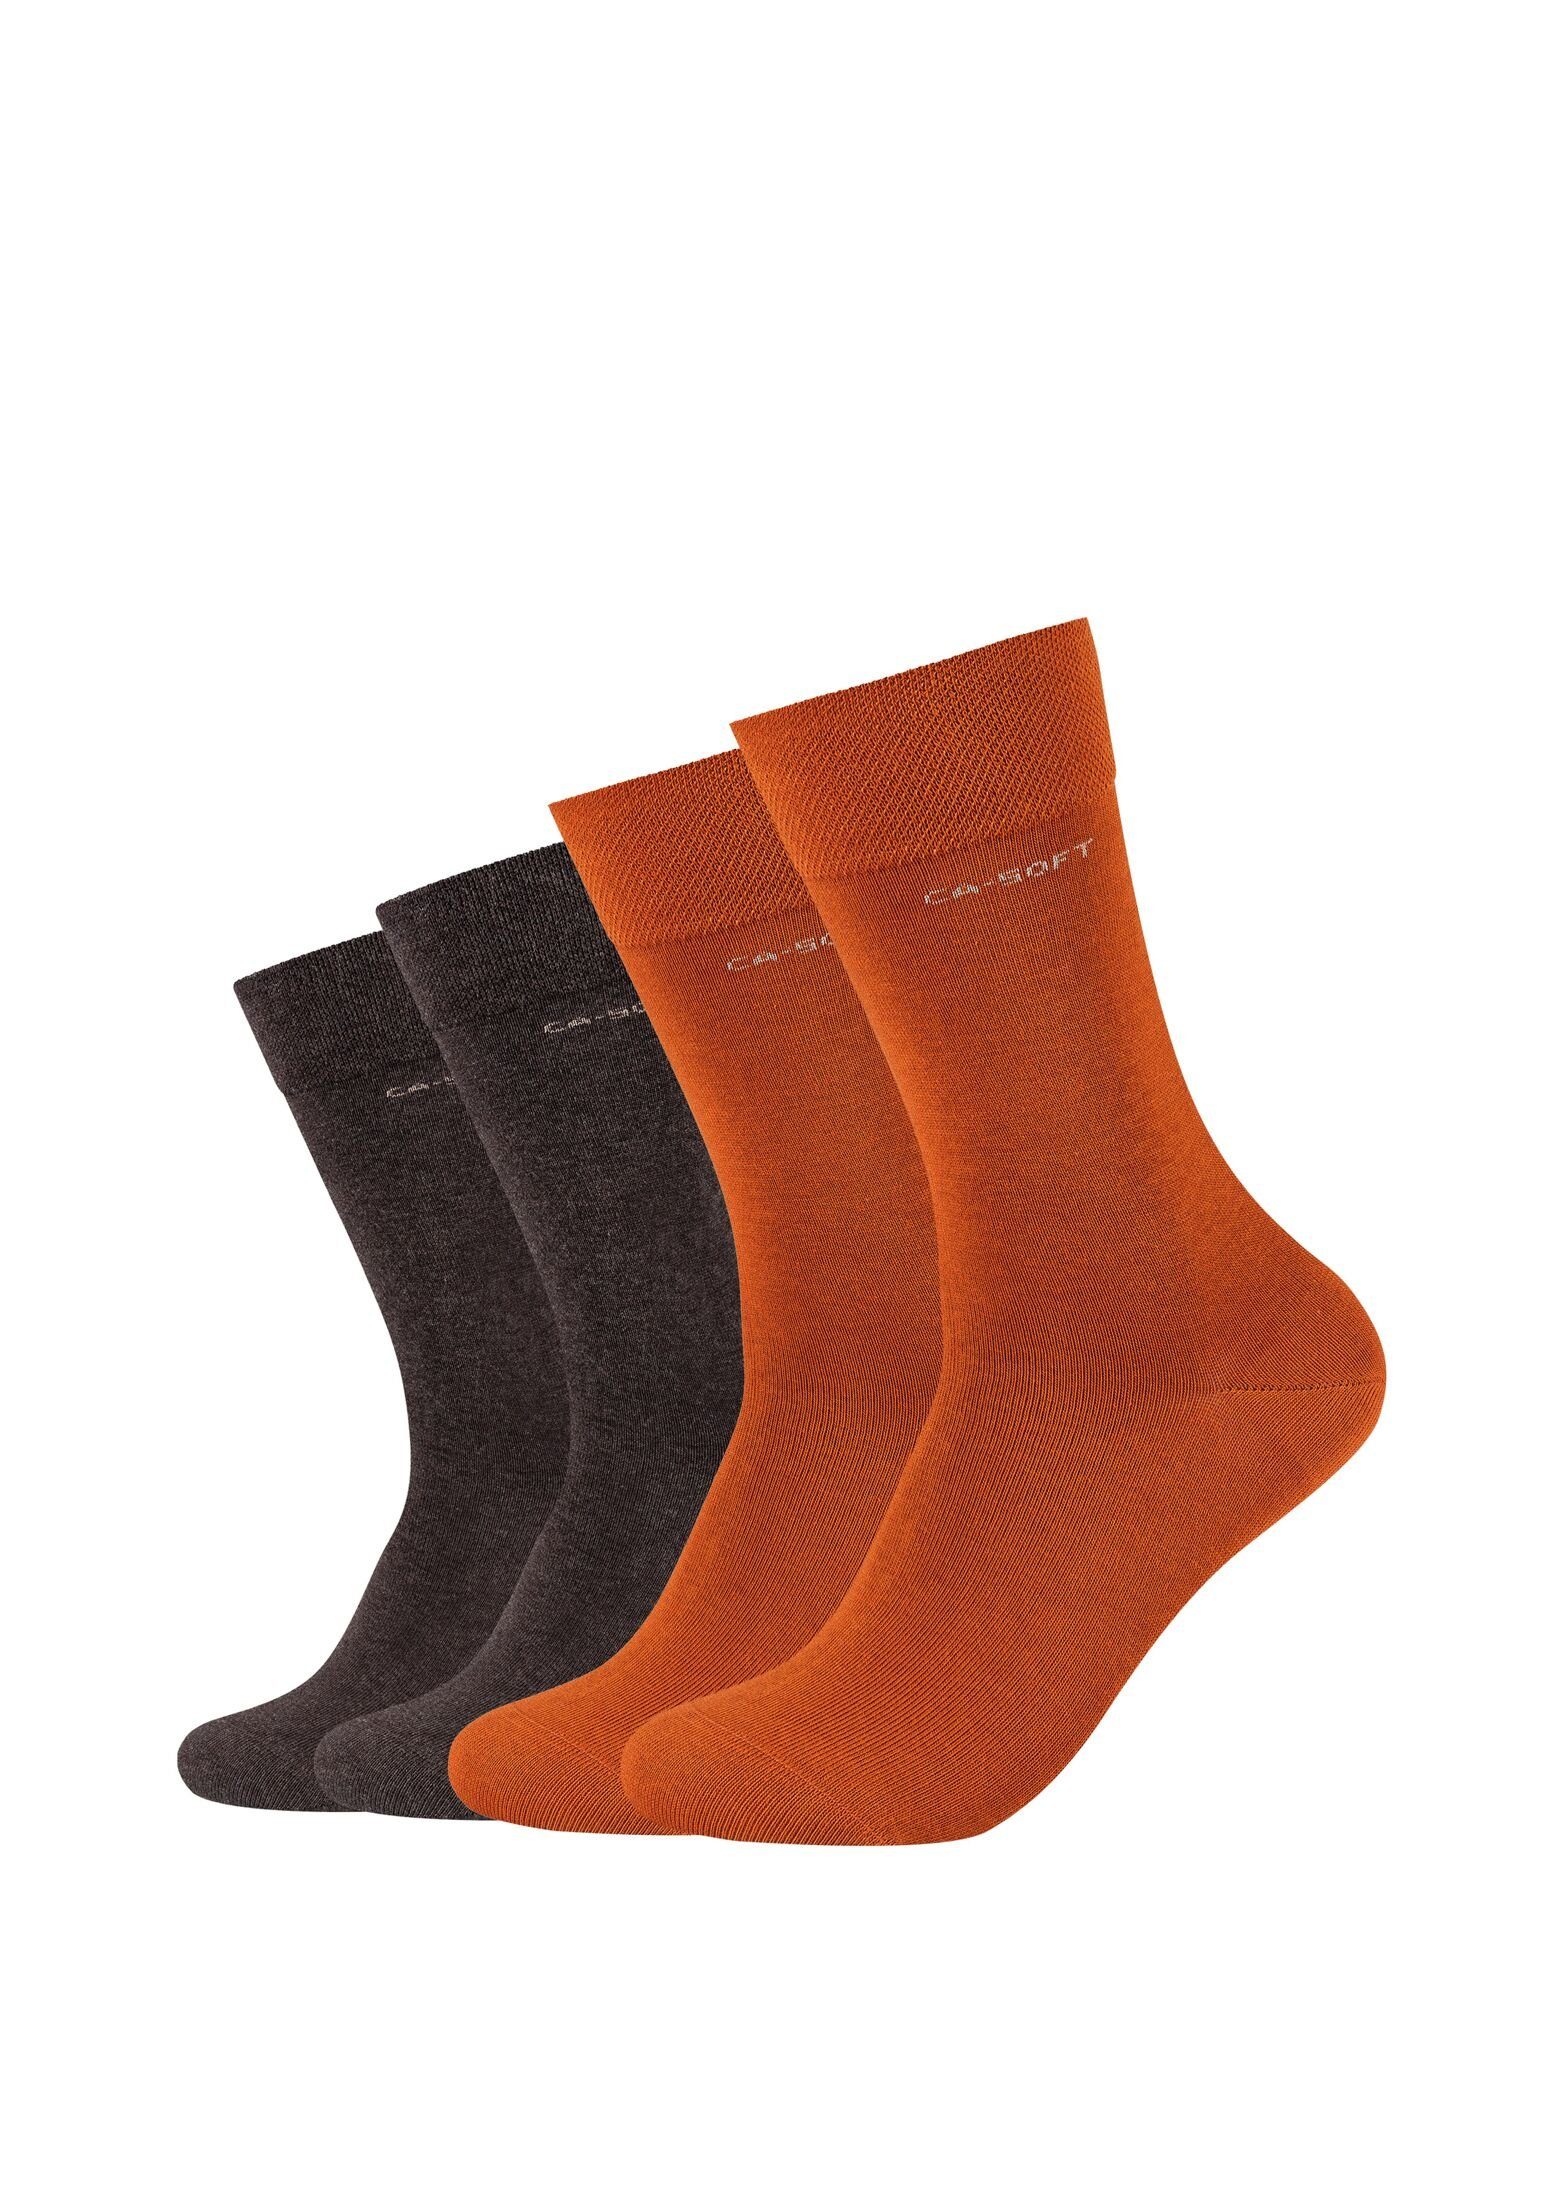 Camano Socken Socken für Damen und Herren Businesssocken Komfortbund Bequem rust | 